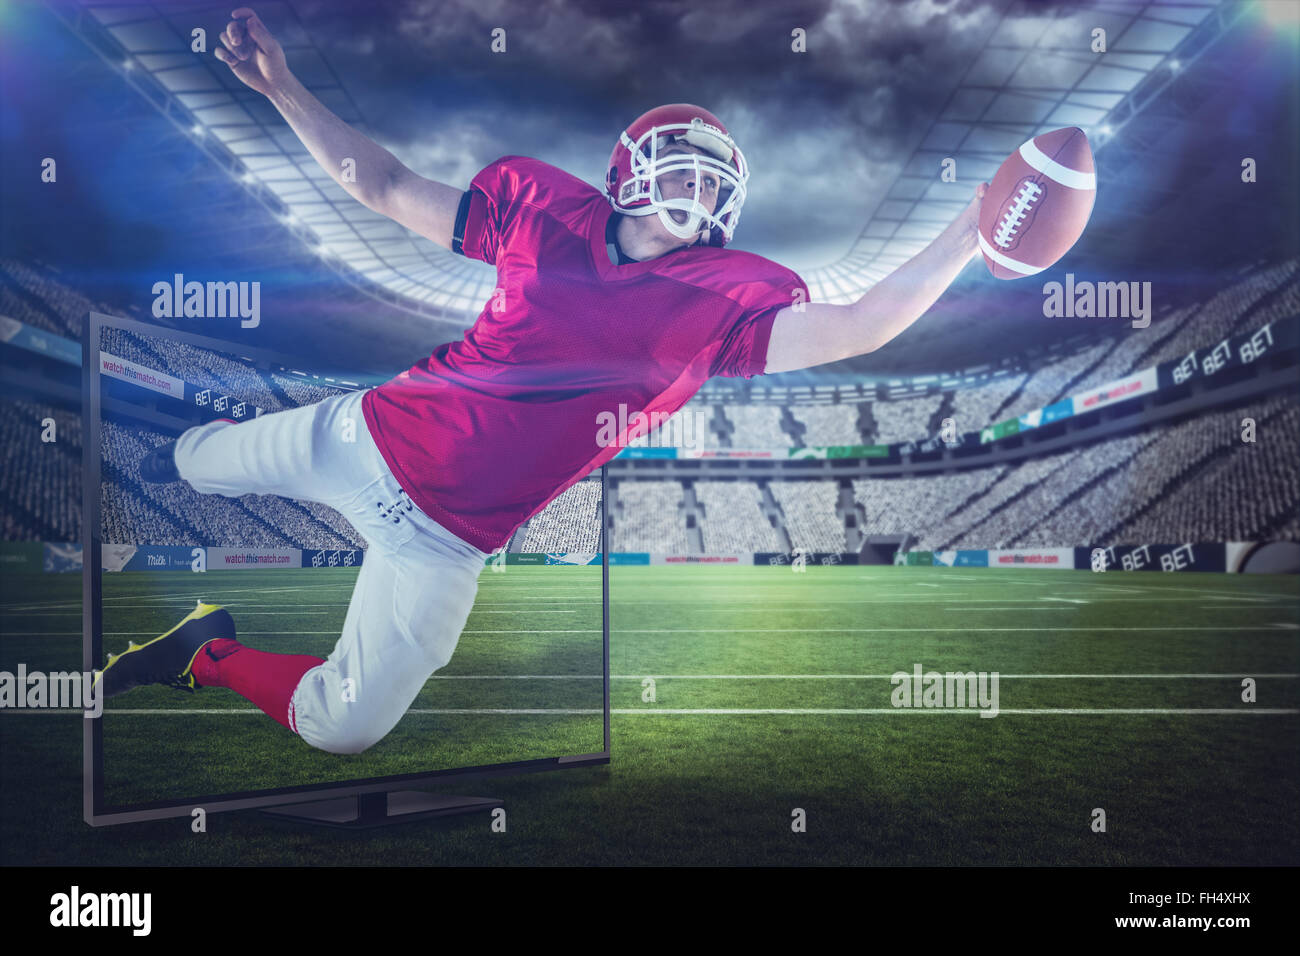 Immagine composita del giocatore di football americano segnando un touchdown Foto Stock